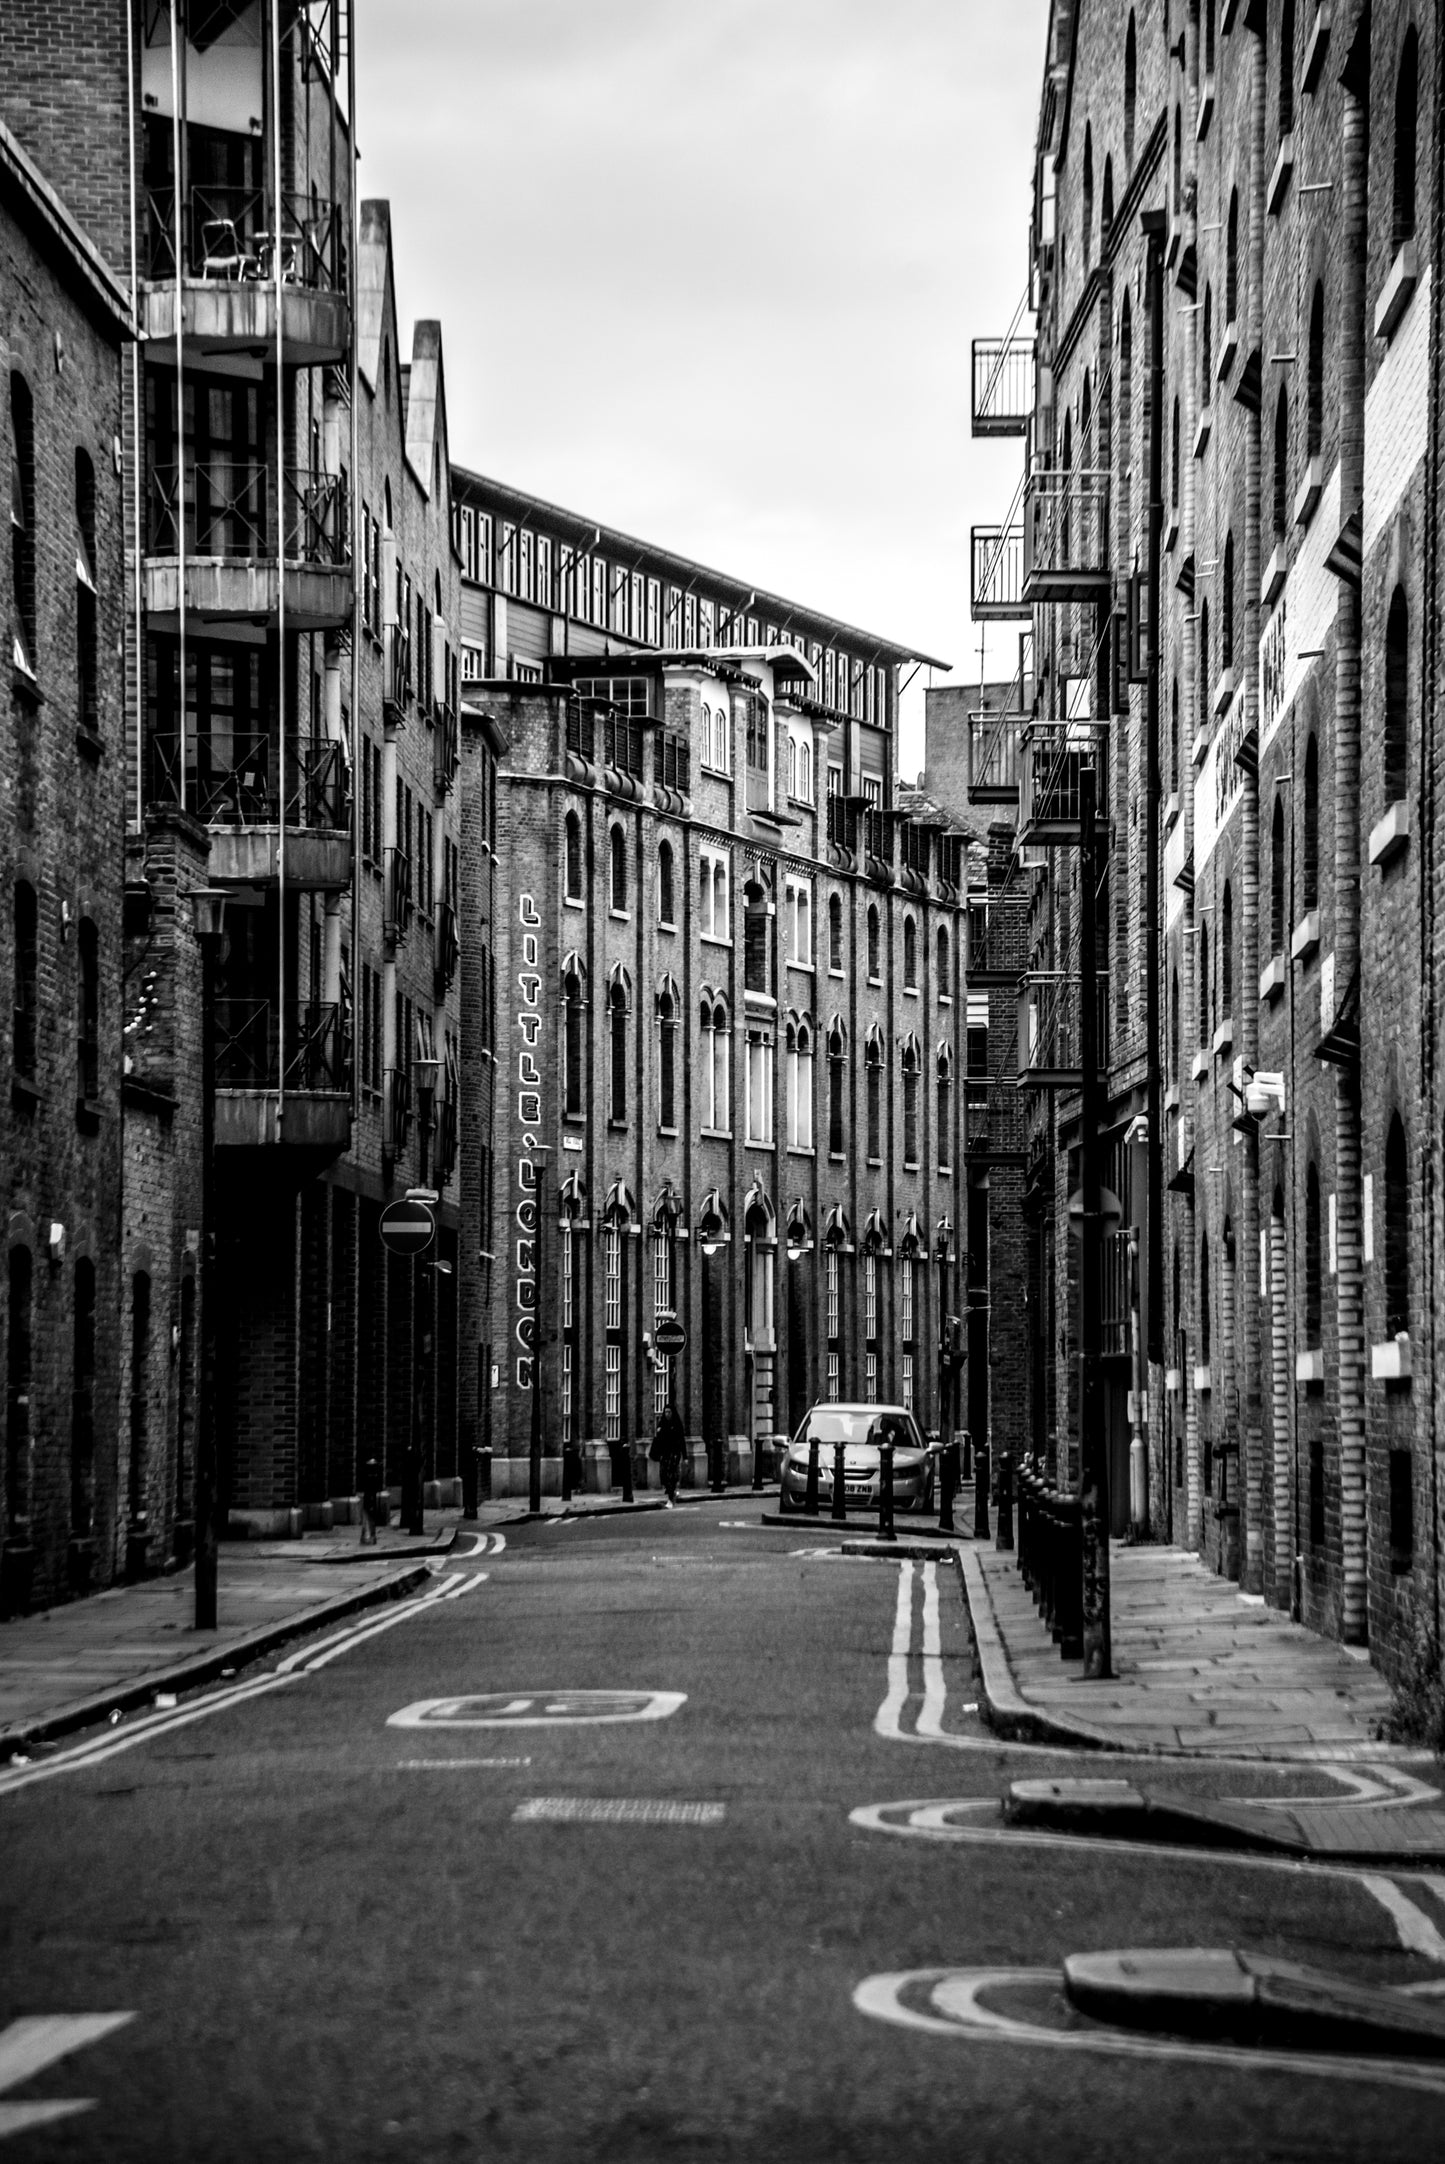 Street view of Little London - London, UK